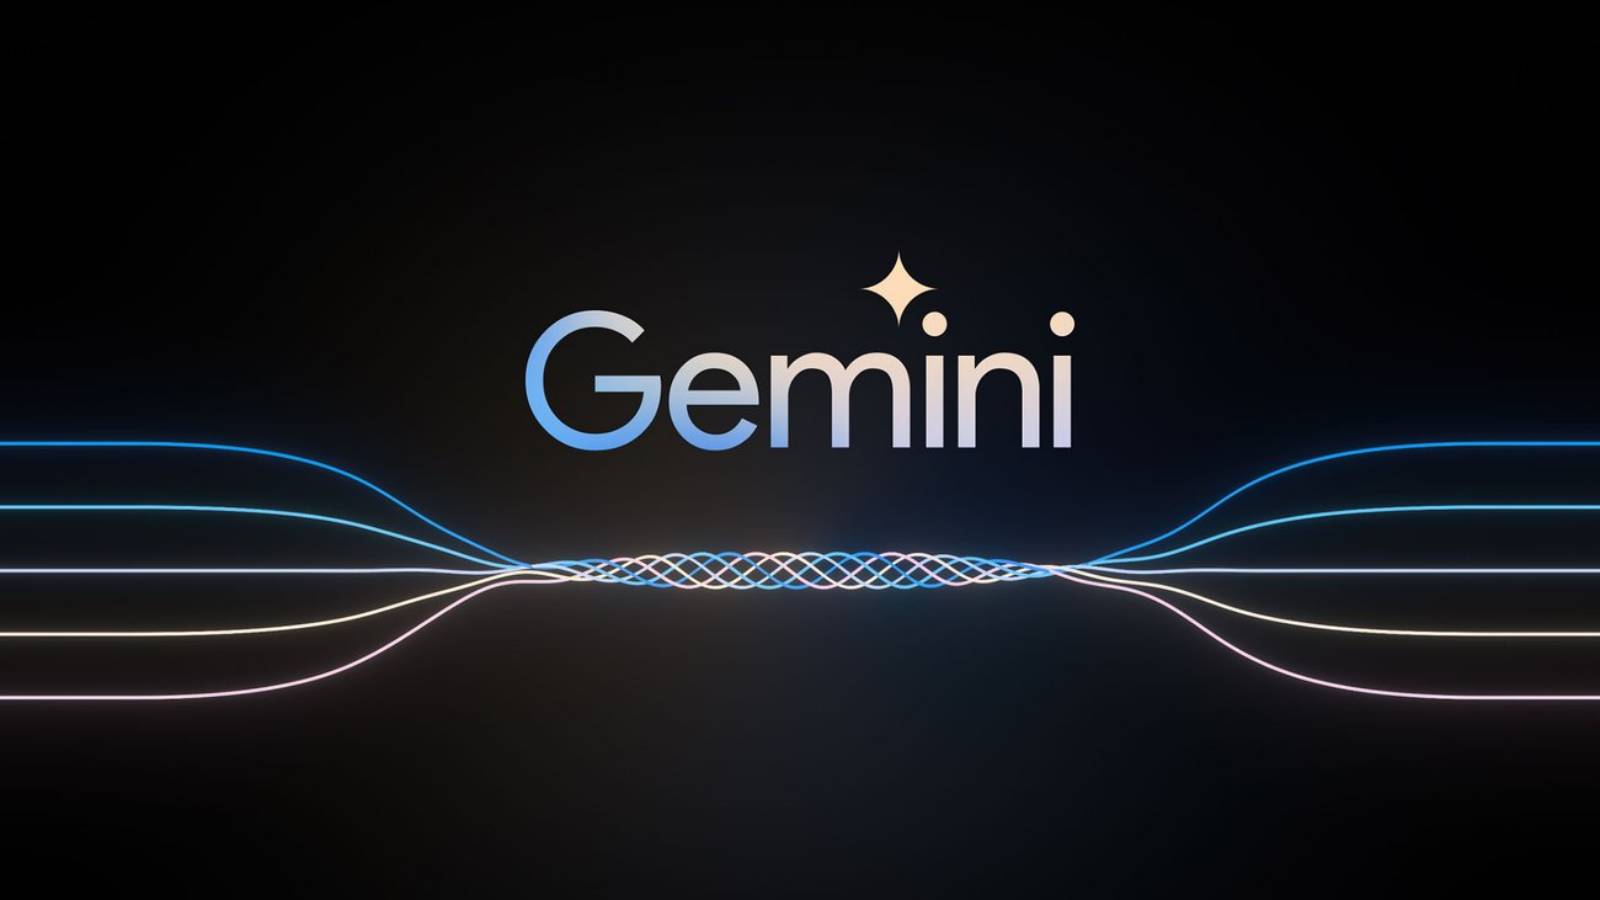 Google veröffentlicht eine neue Version von Gemini mit großer Änderung